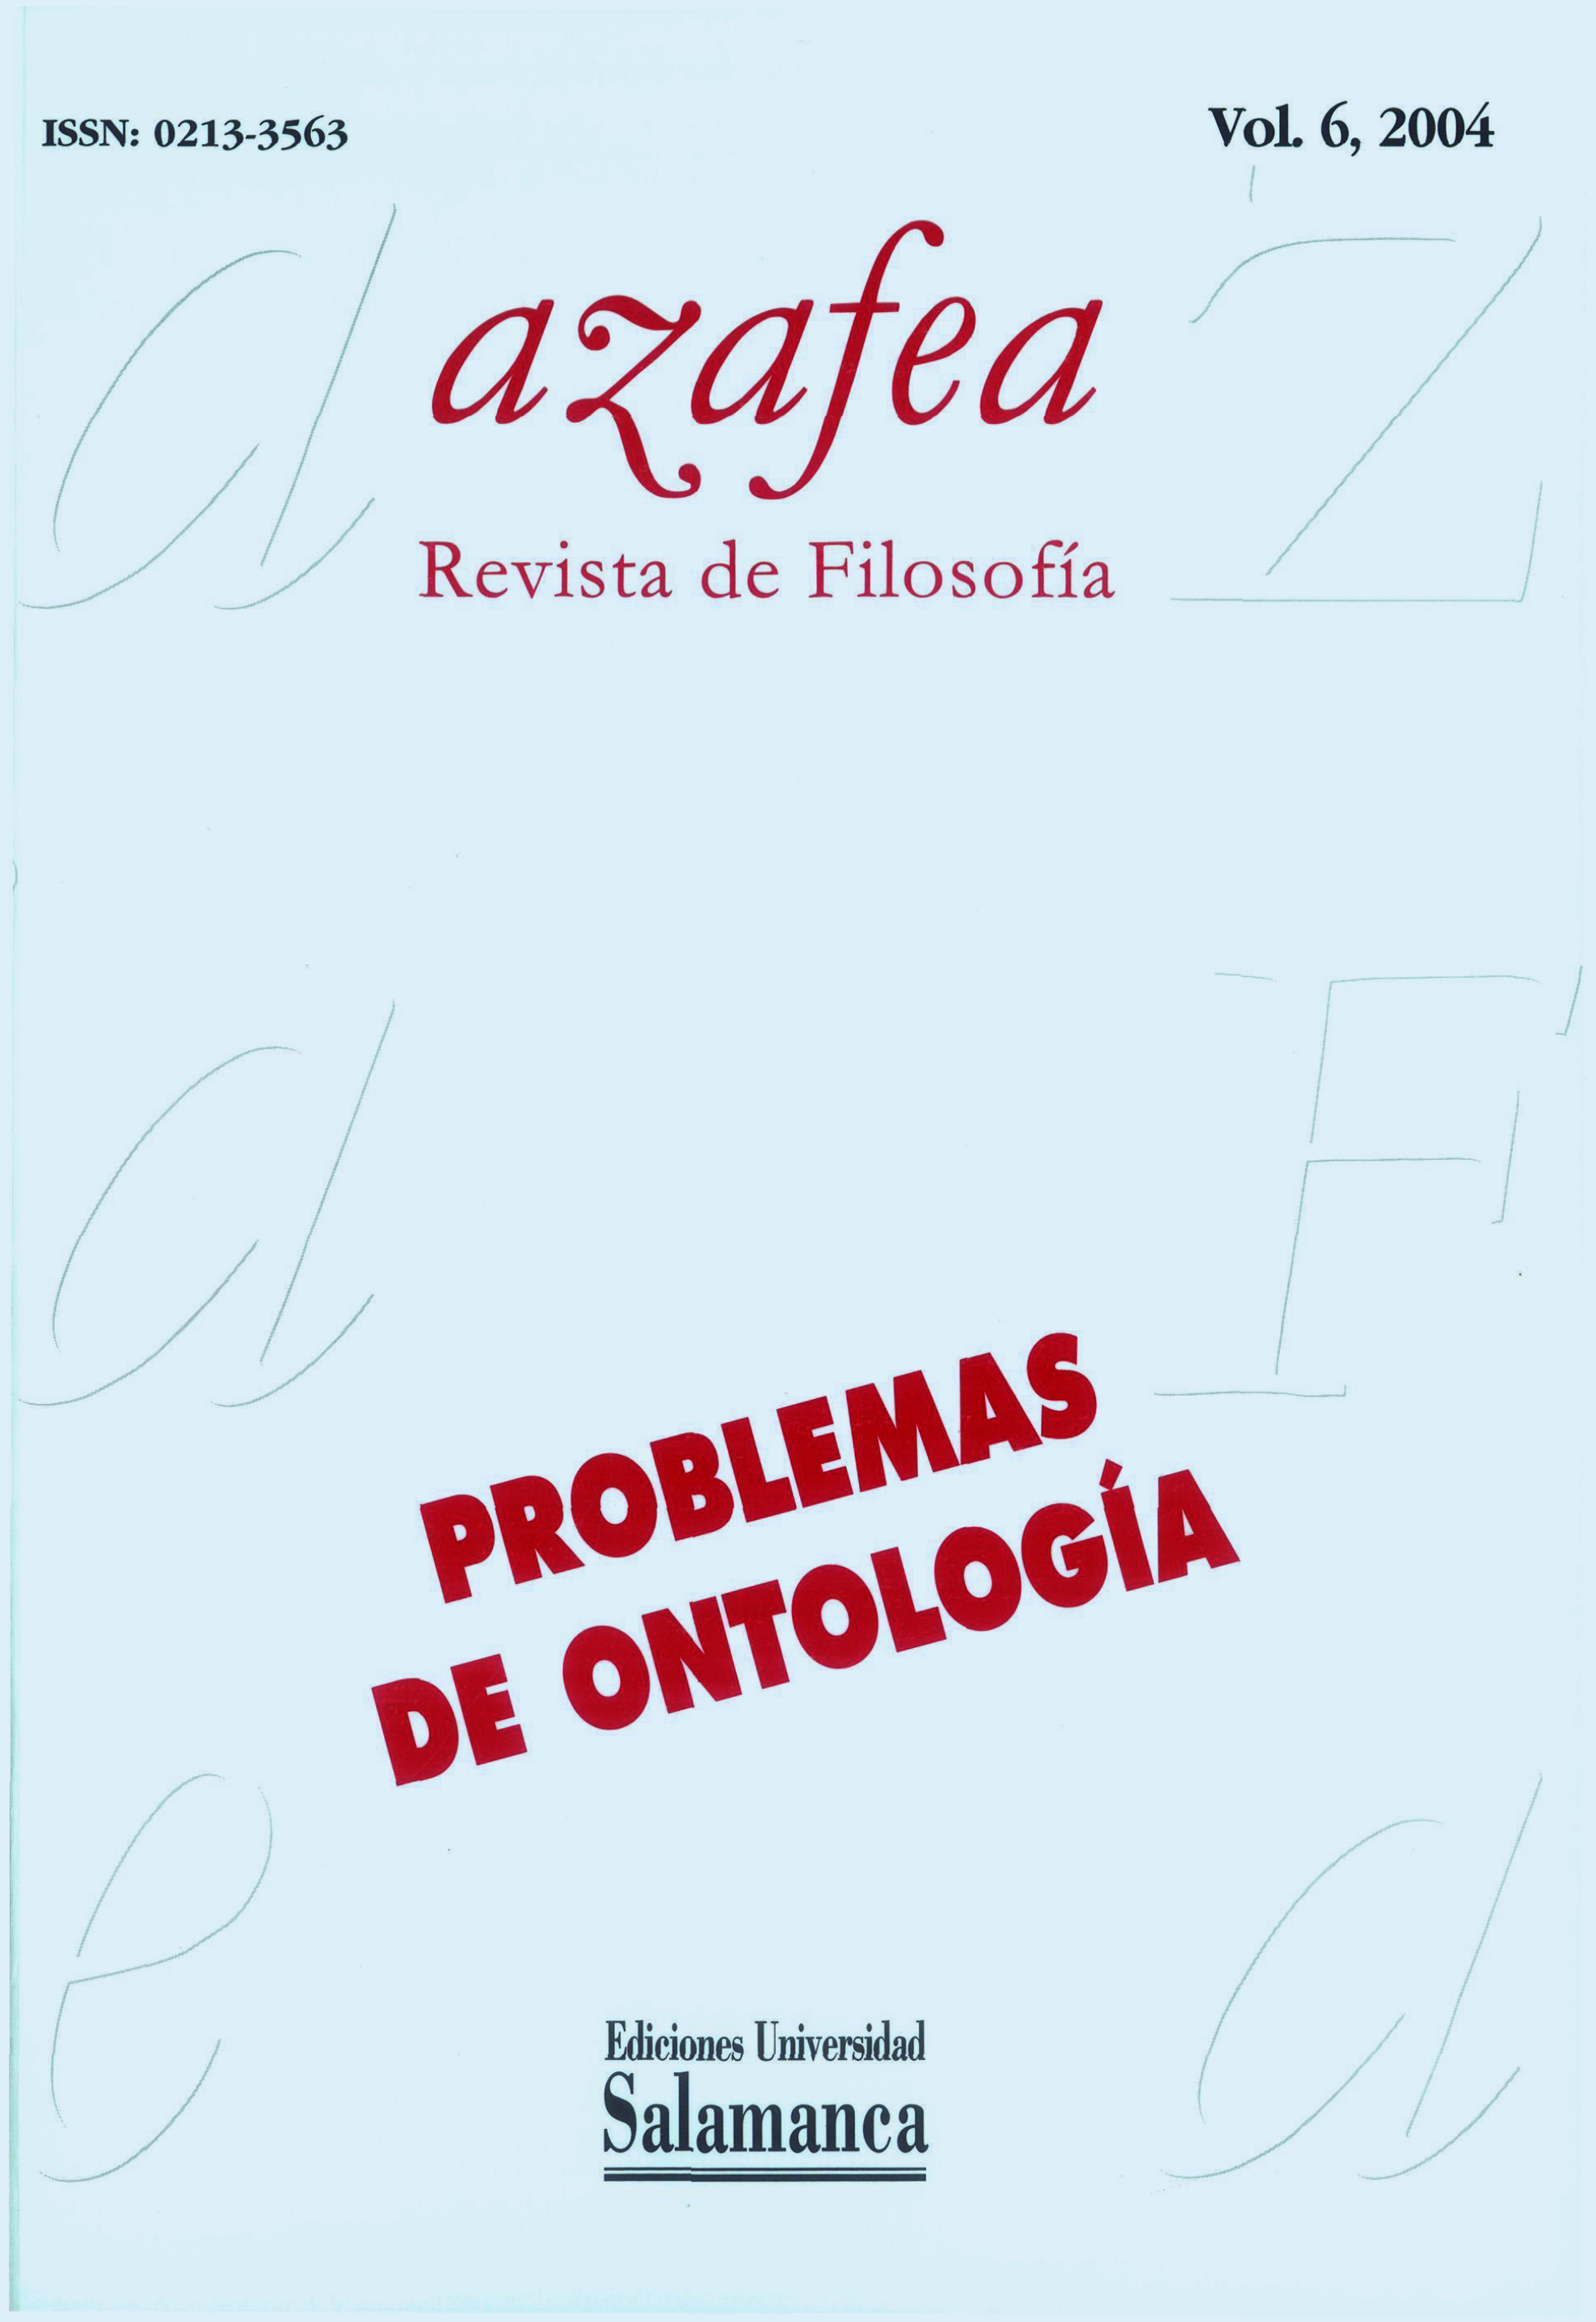                         Ver Vol. 6 (2004): Problemas de ontología
                    